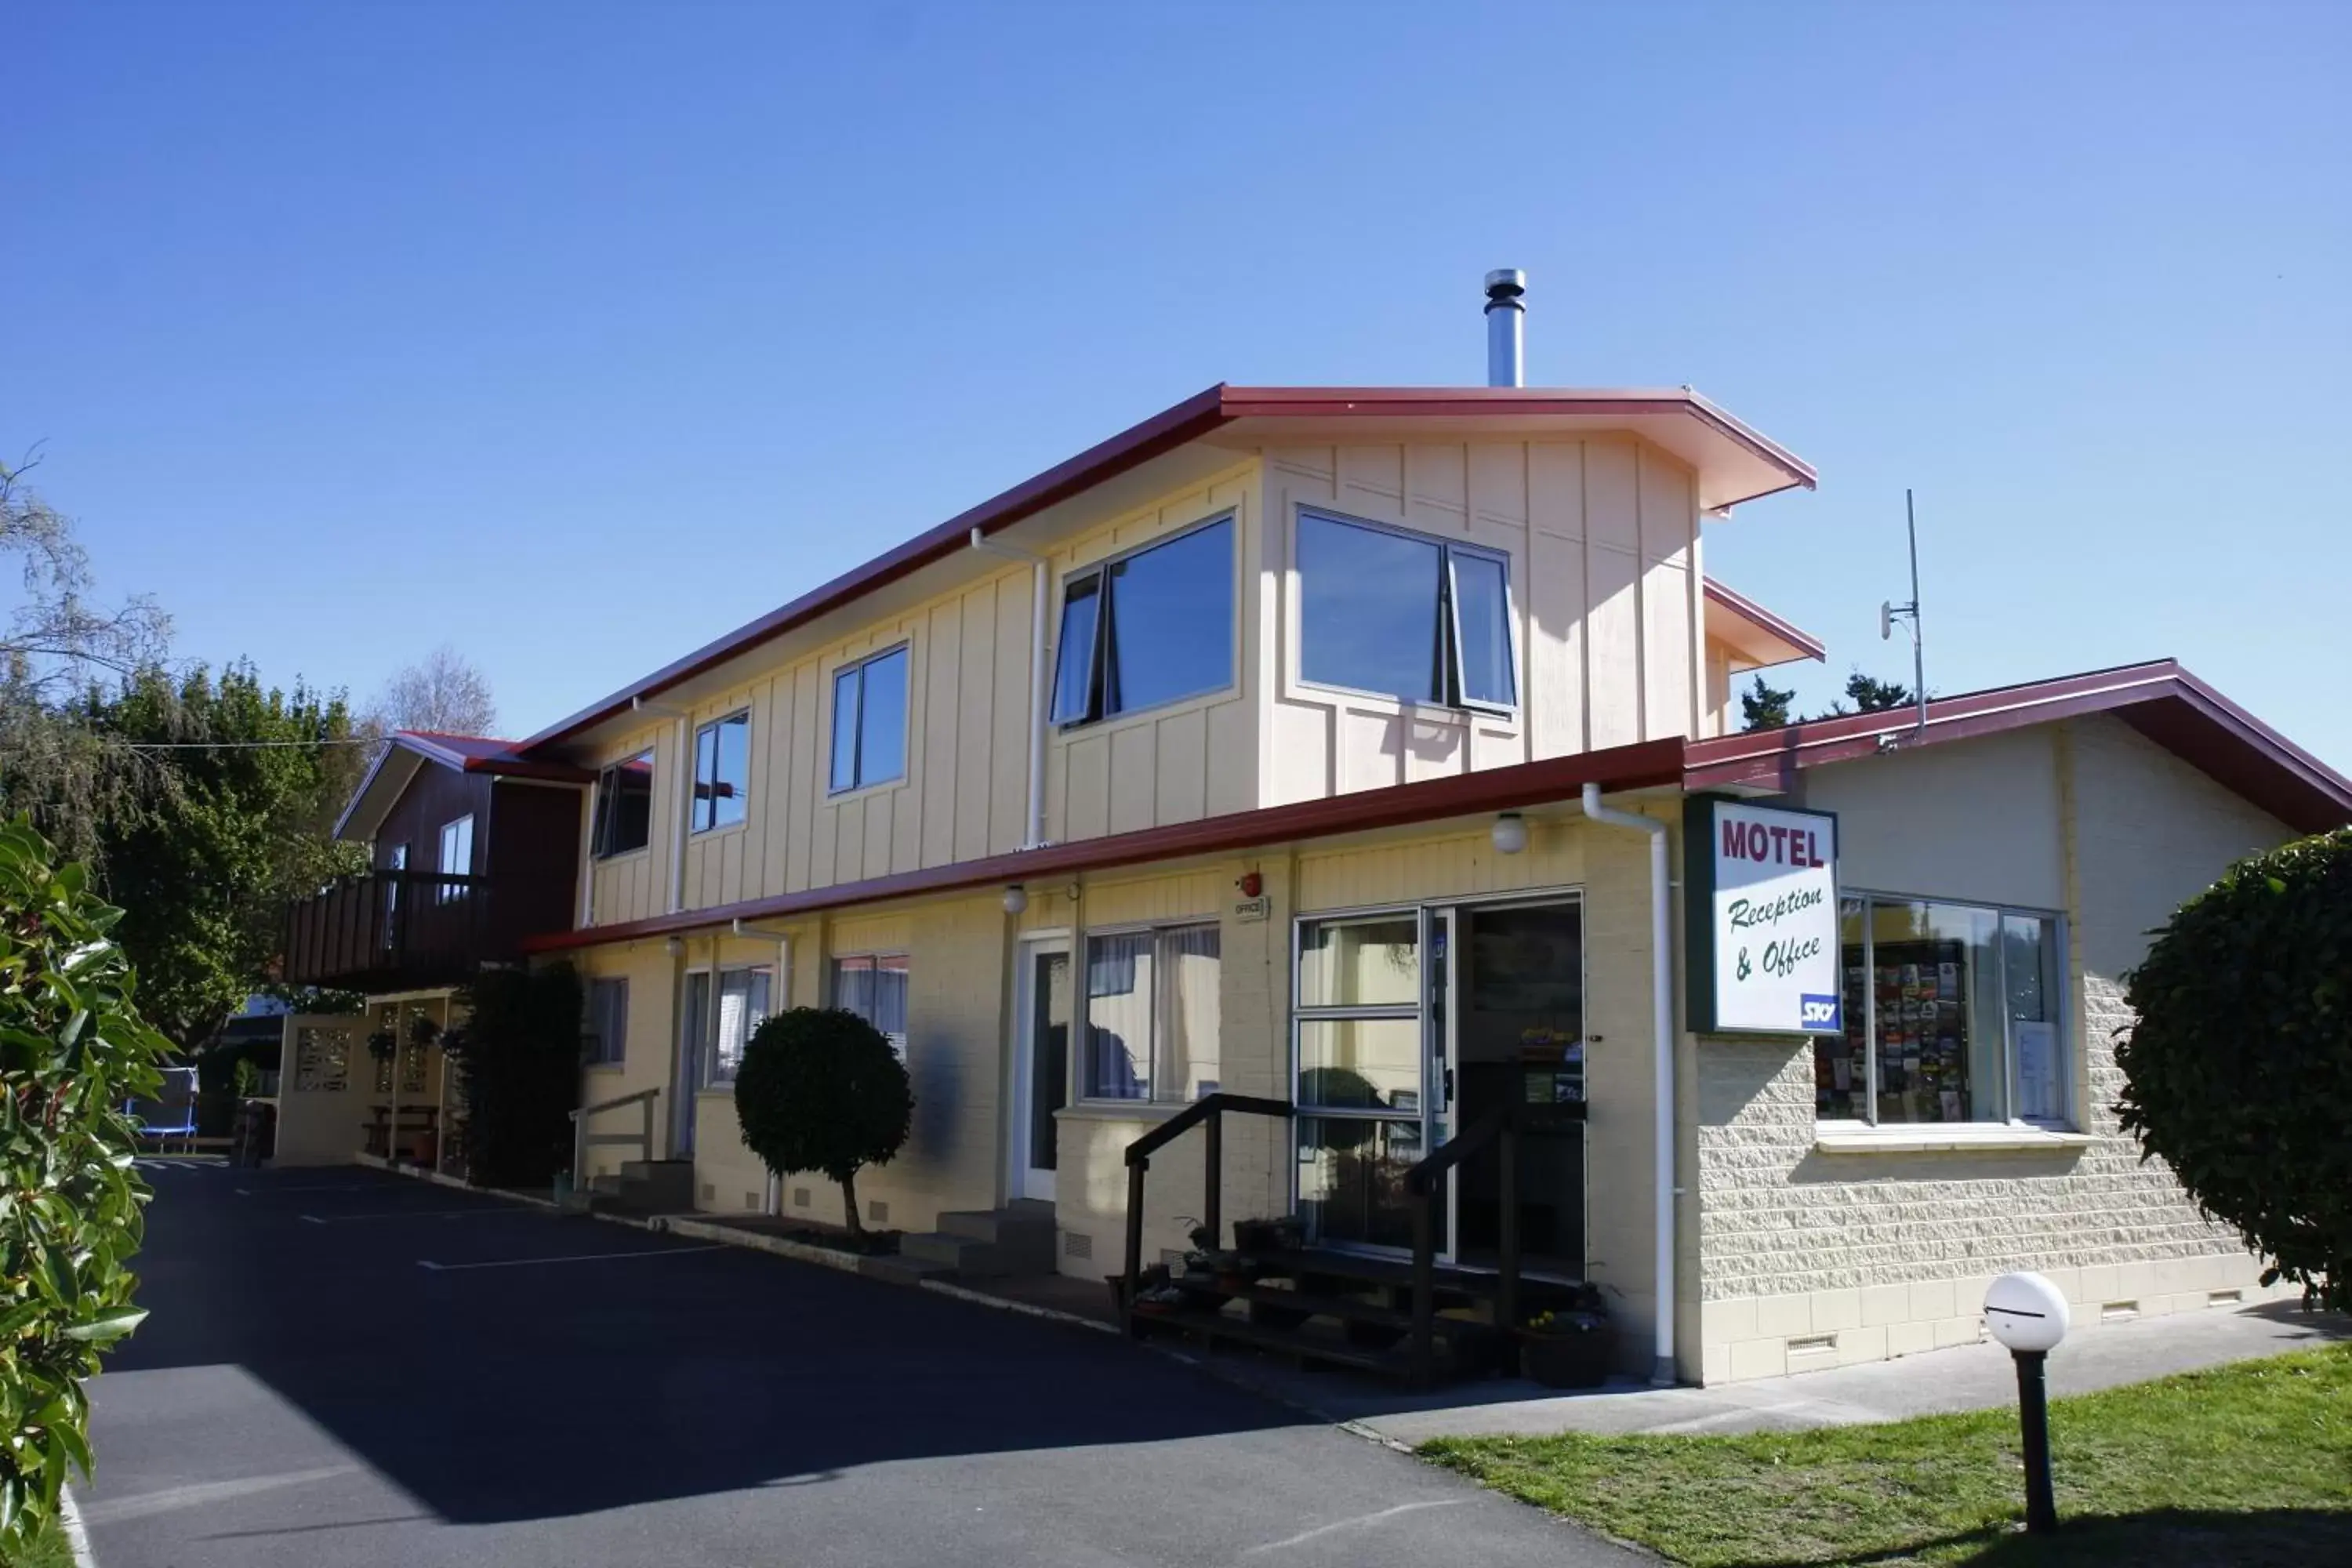 Facade/entrance, Property Building in Mountain View Motel